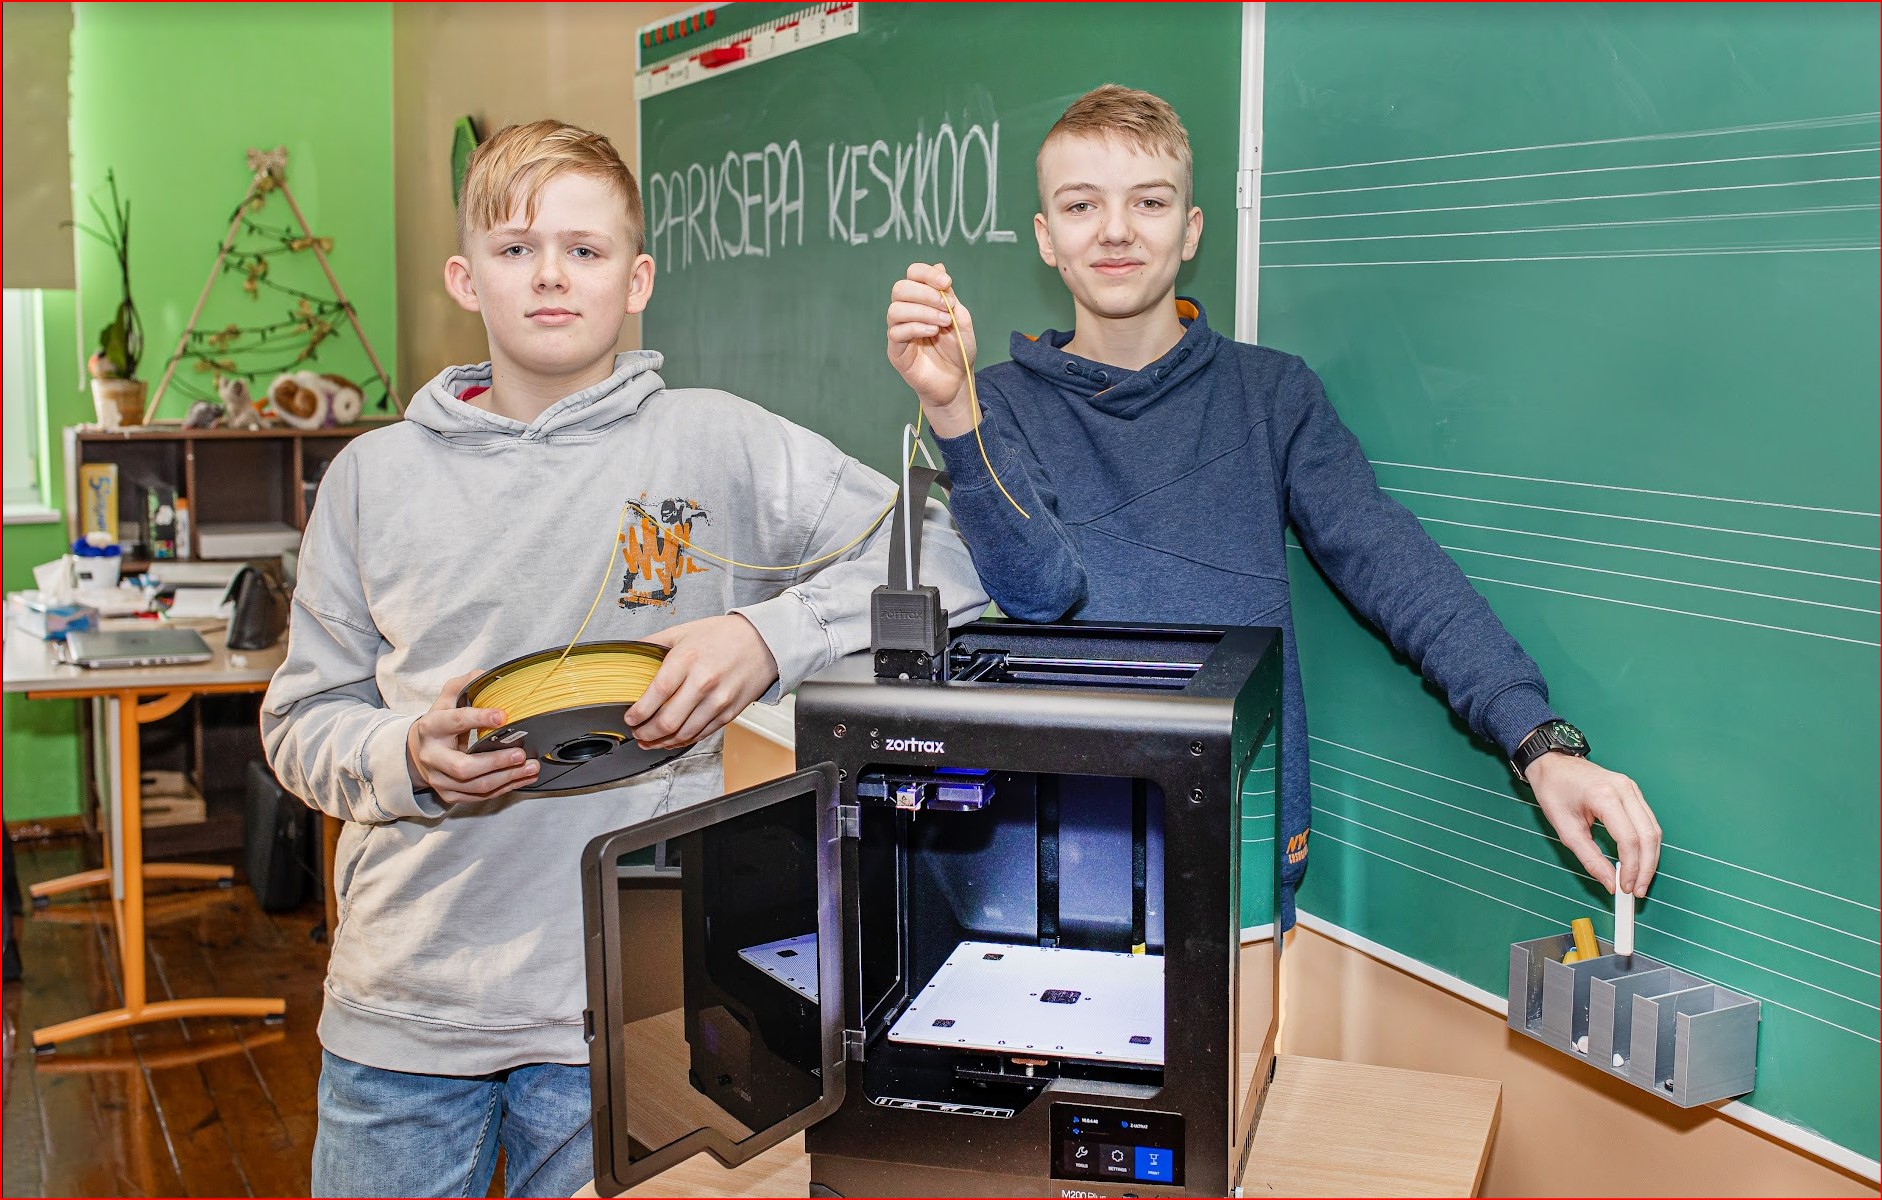 Parksepa keskkooli 6. klassi õpilased Kerdo Murde (paremal) ja Romek Niilo võitsid tihedas konkurentsis kukkumisvaba tahvlihoidiku loomisega rahvusvahelisel võistlusel esikoha. Auhinnaks saadi koolile fotol olev 3D-printer.  FOTO: Aigar Nagel